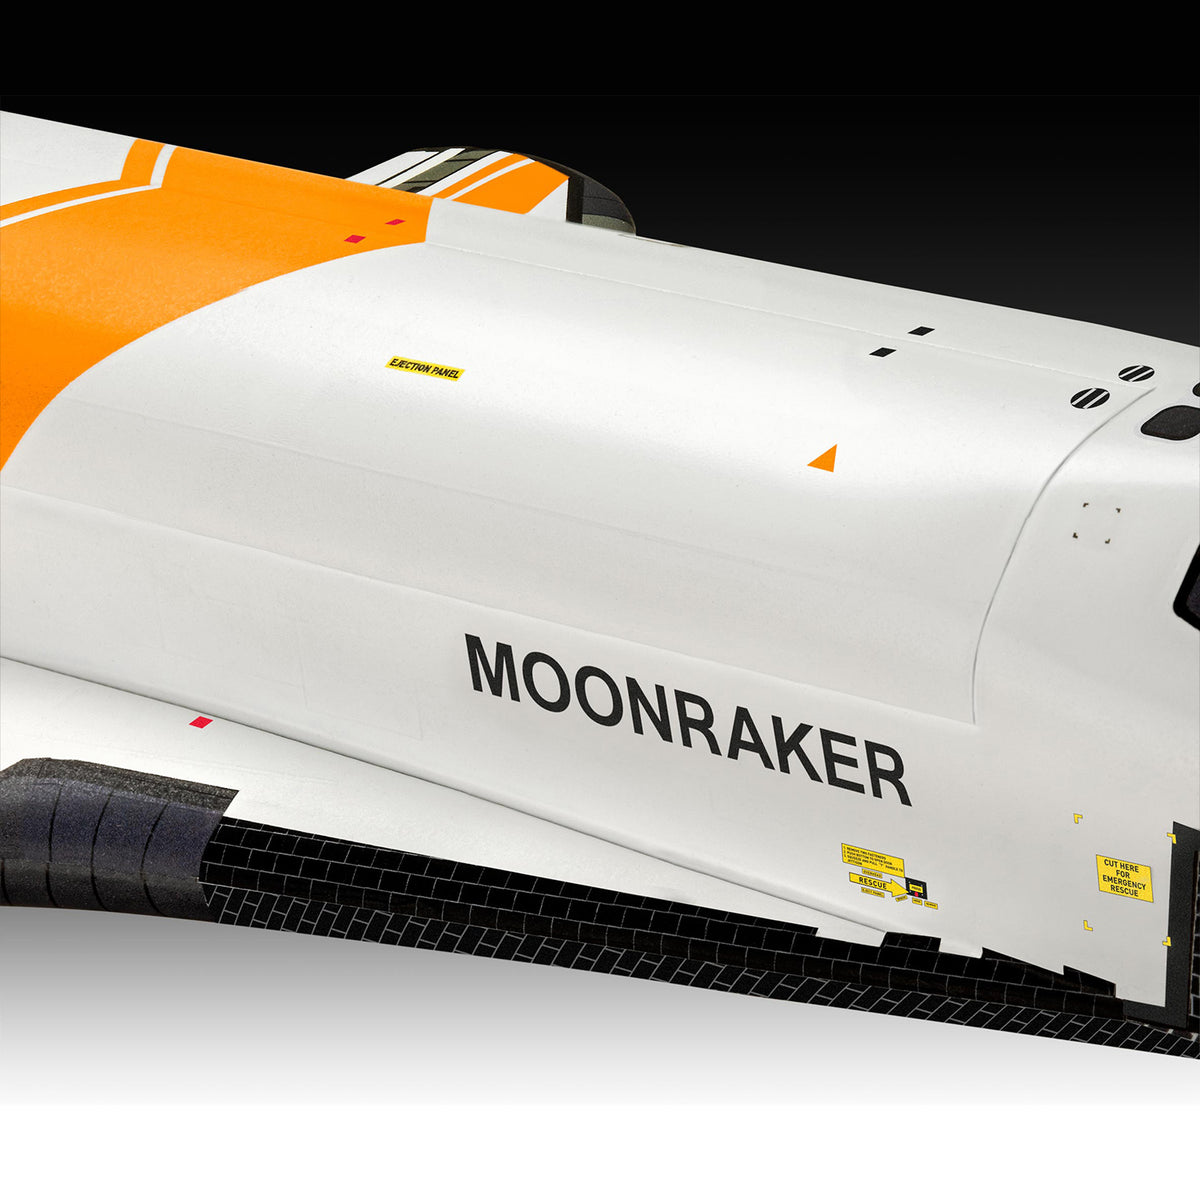 James Bond Space Shuttle Modellbausatz - Moonraker Edition - Von Revell